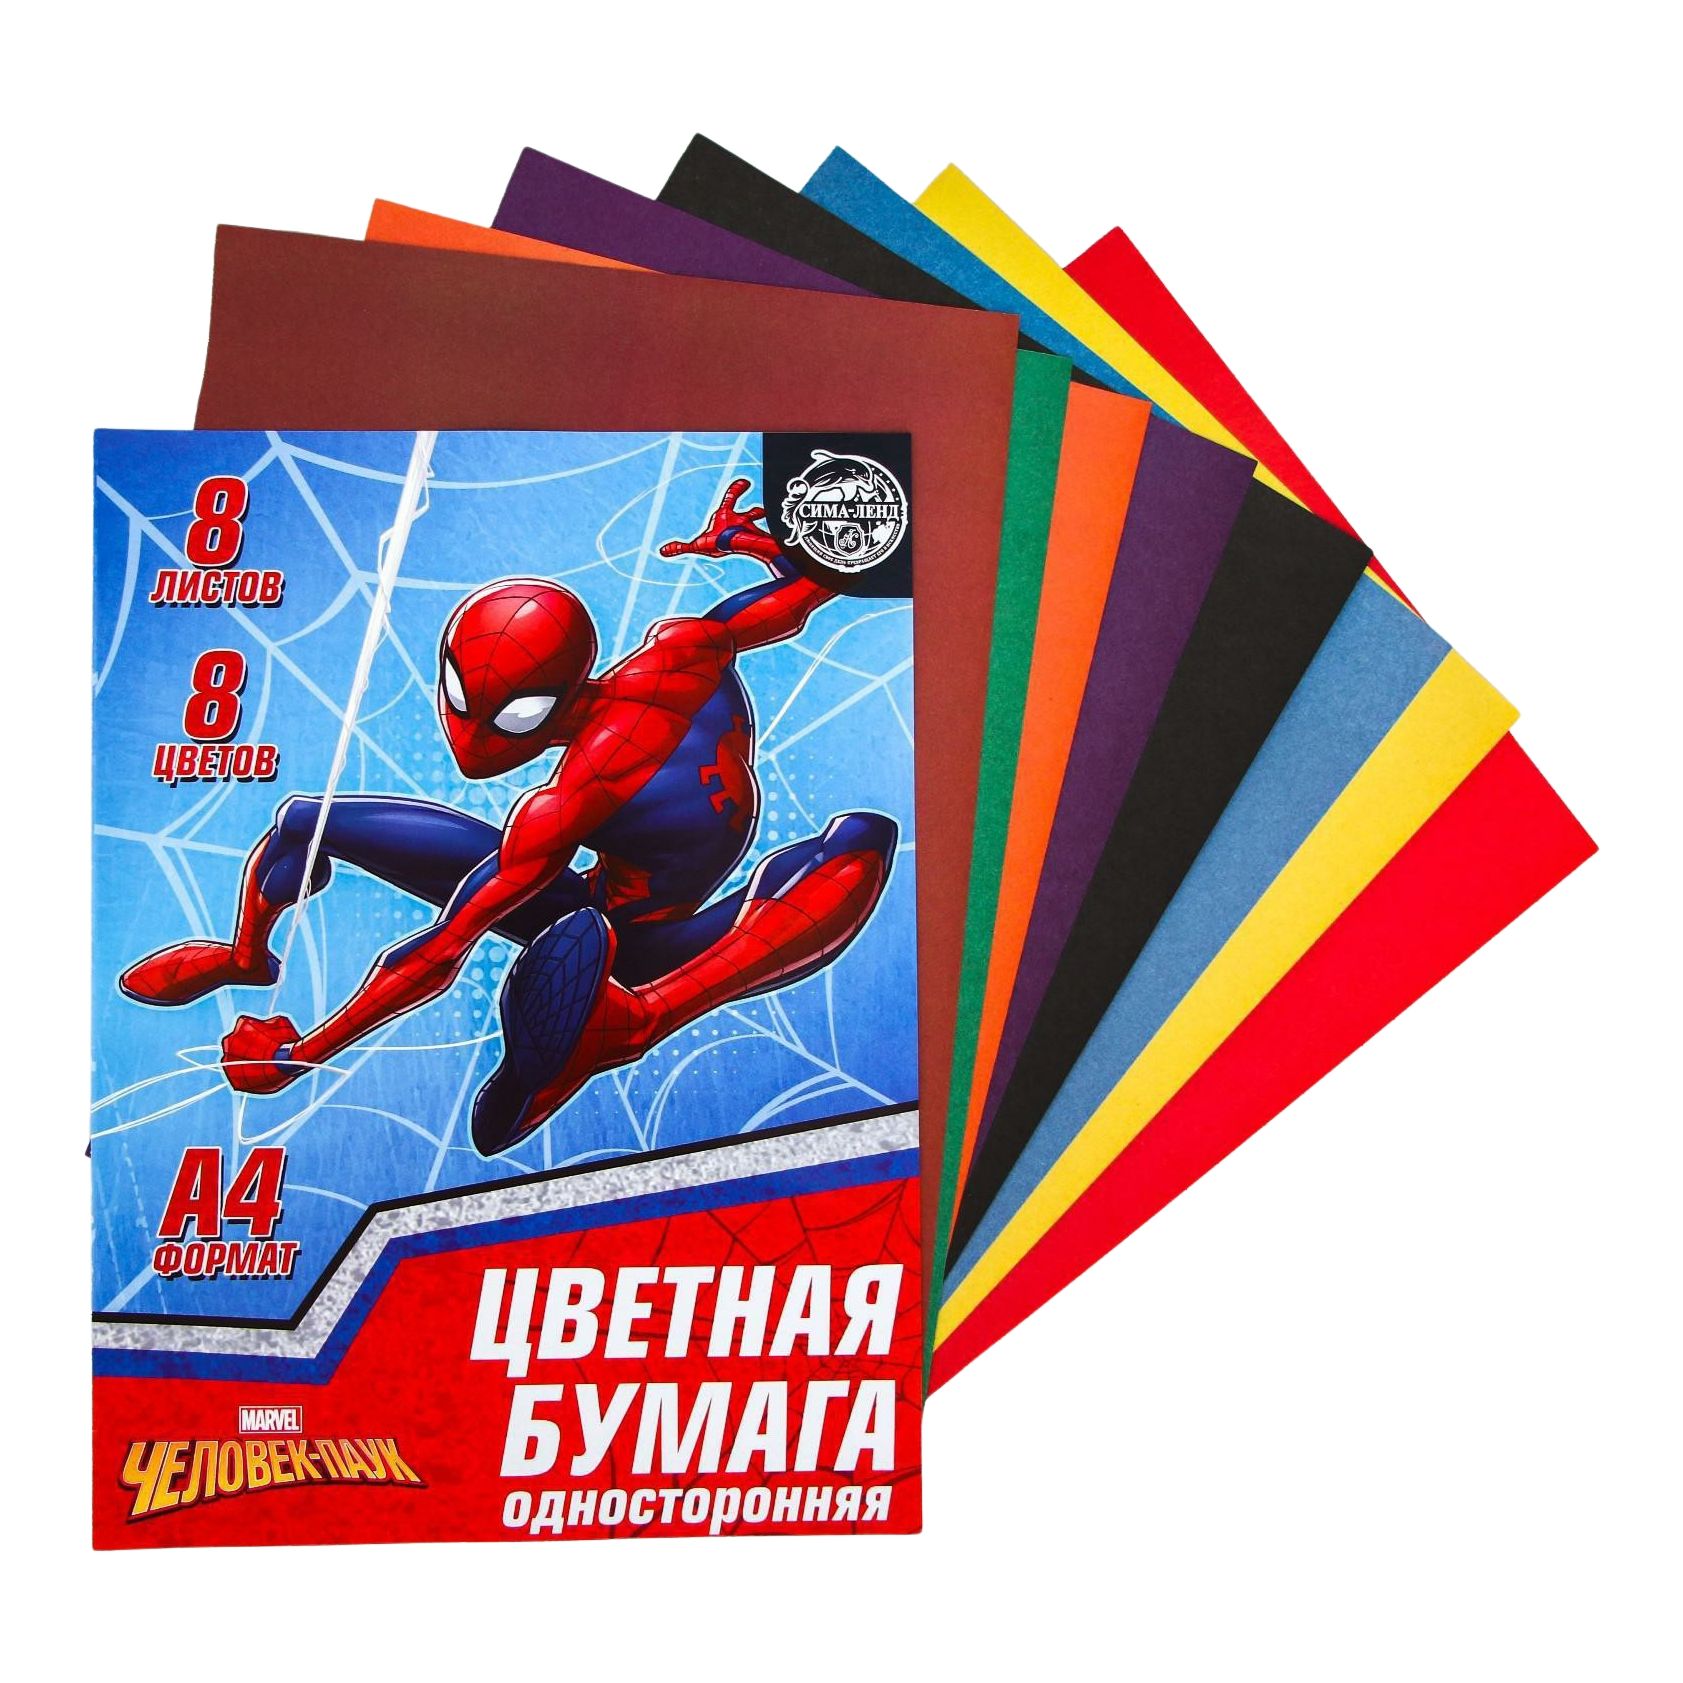 Бумага цветная Marvel Человек-паук односторонняя А4 8 цветов 8 листов